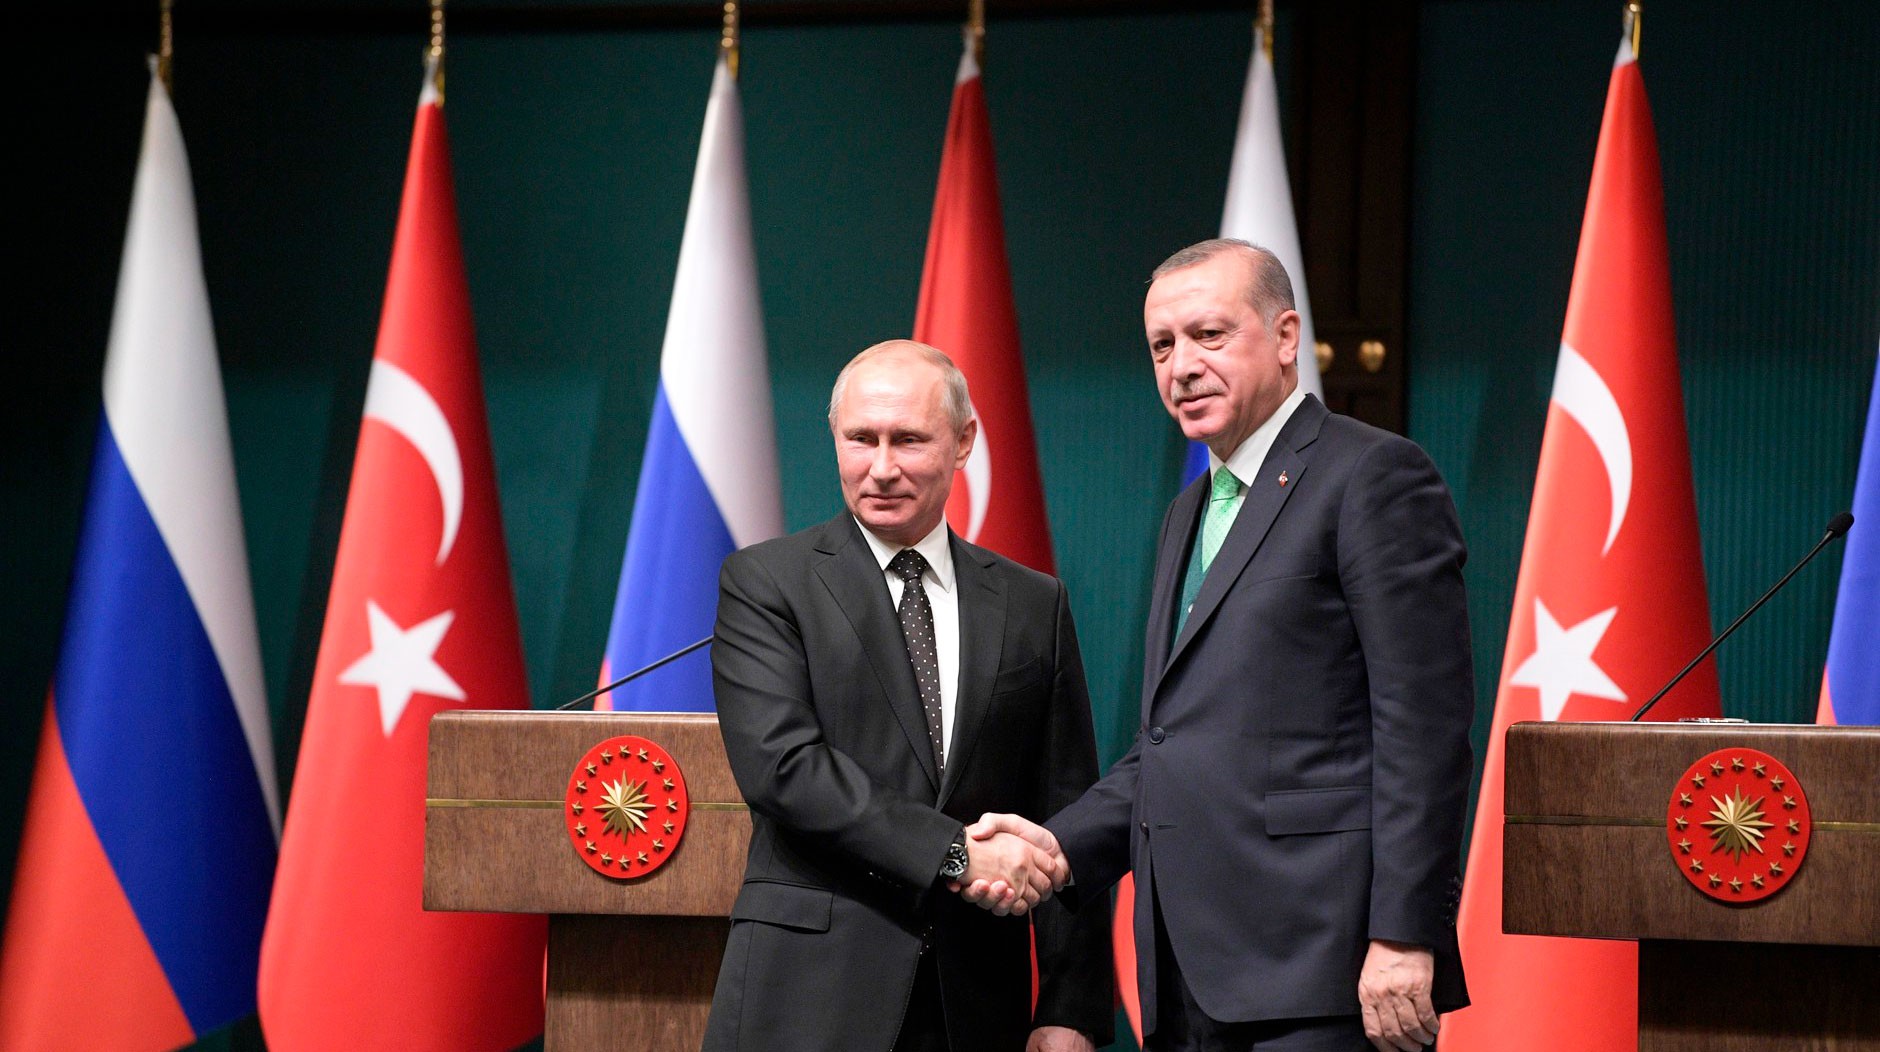 Dailystorm - Первый зарубежный вояж избранного президента: Путин поедет в Турцию